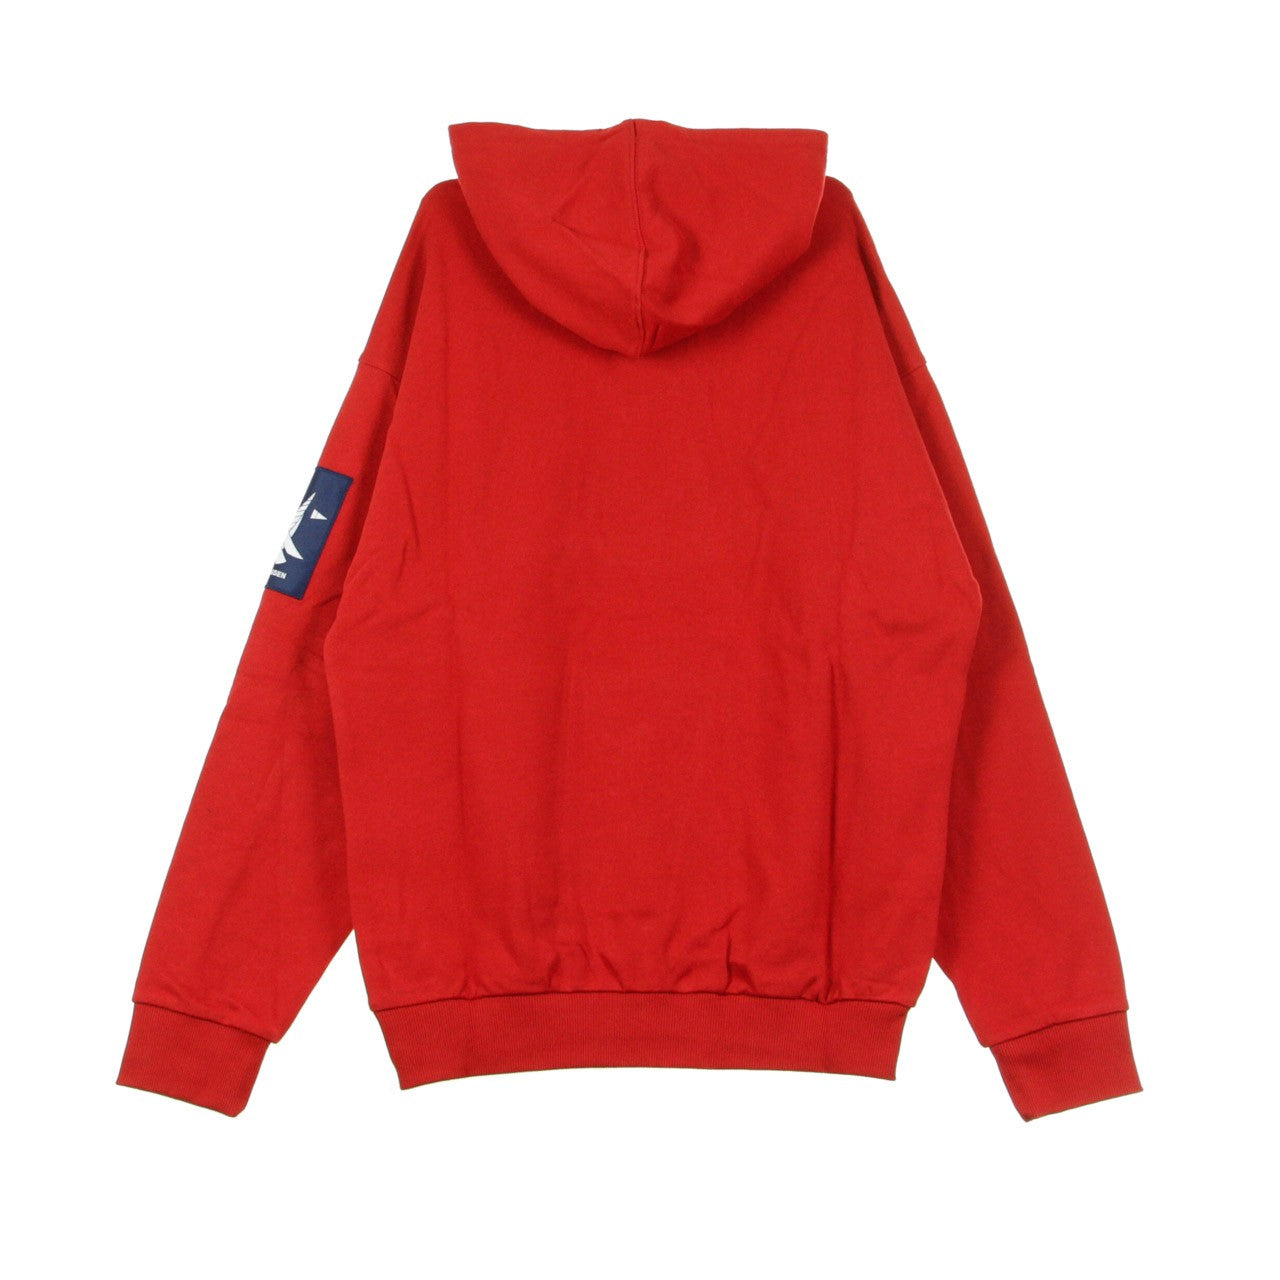 Men's Lightweight Hooded Sweatshirt Urban Hoodie 2.0 Red